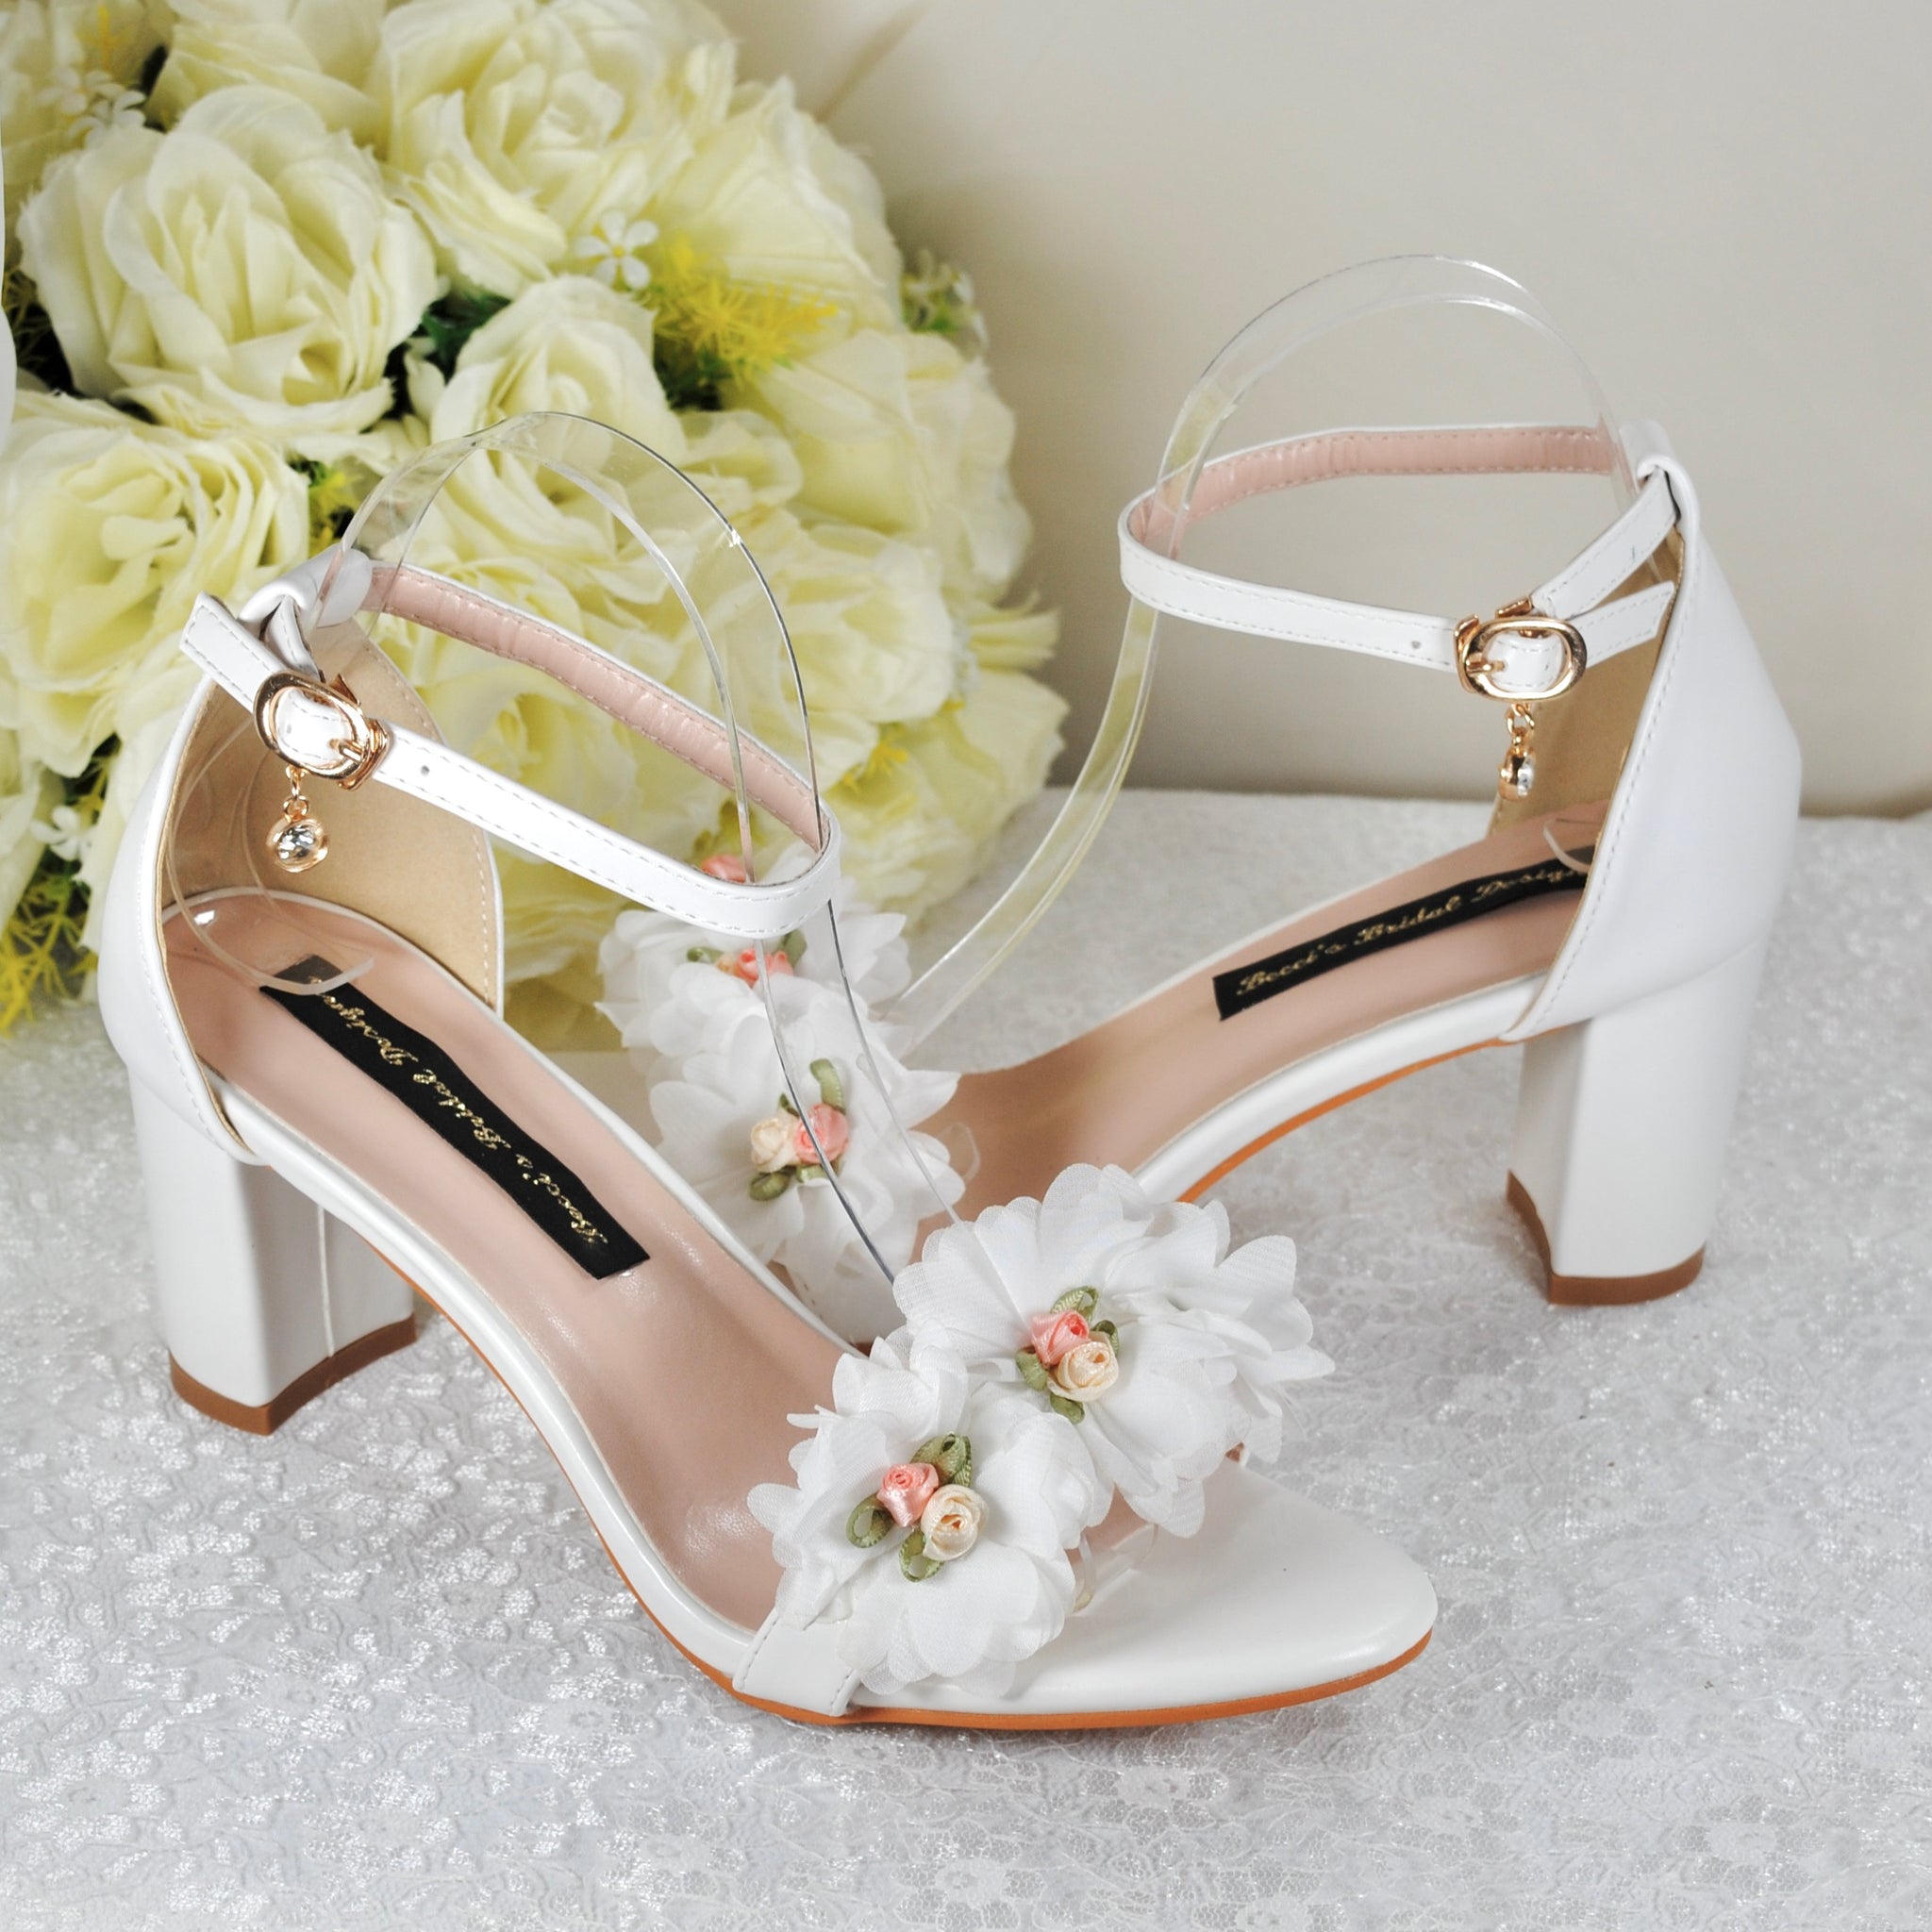 Bridal Shoes | Women's Bridal Shoes Online Australia | Shoe HQ